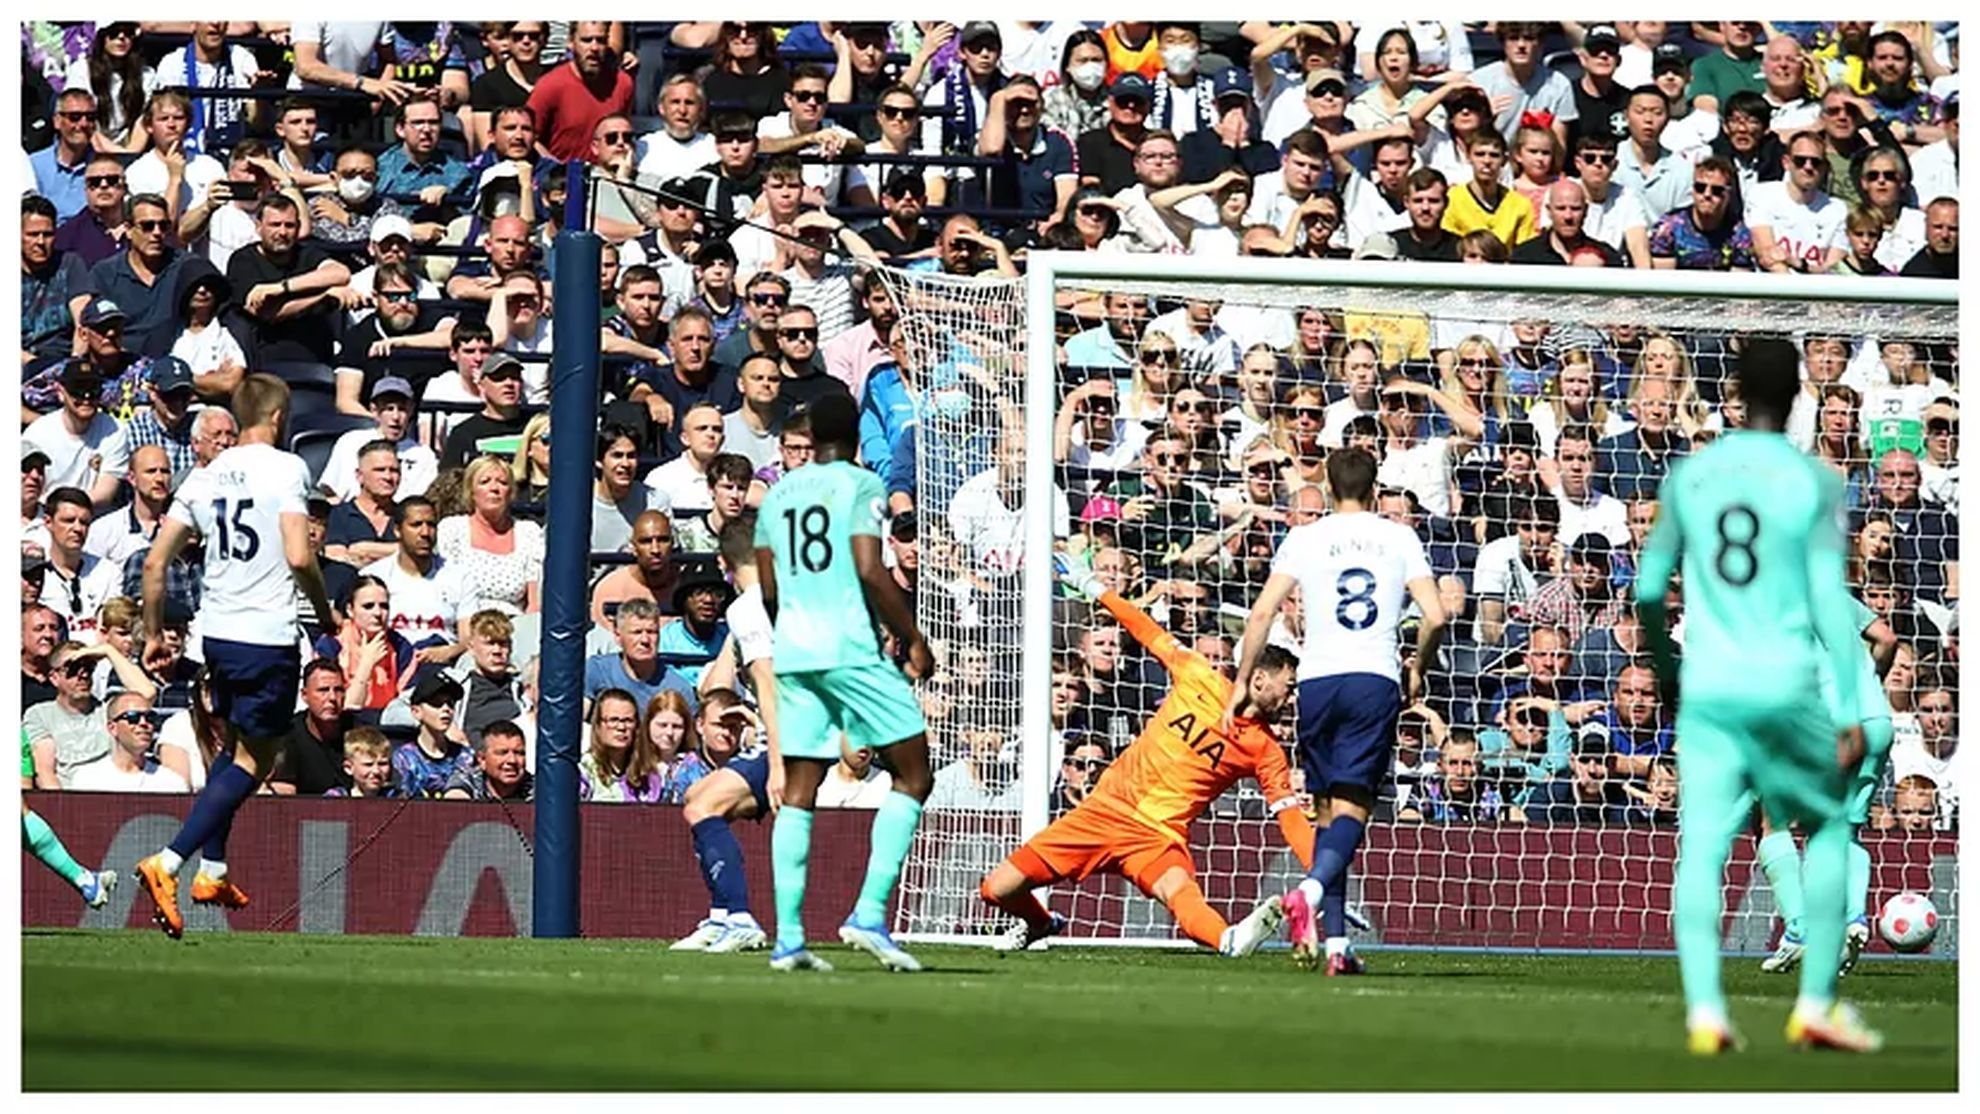 Leandro Trossard scores against Tottenham